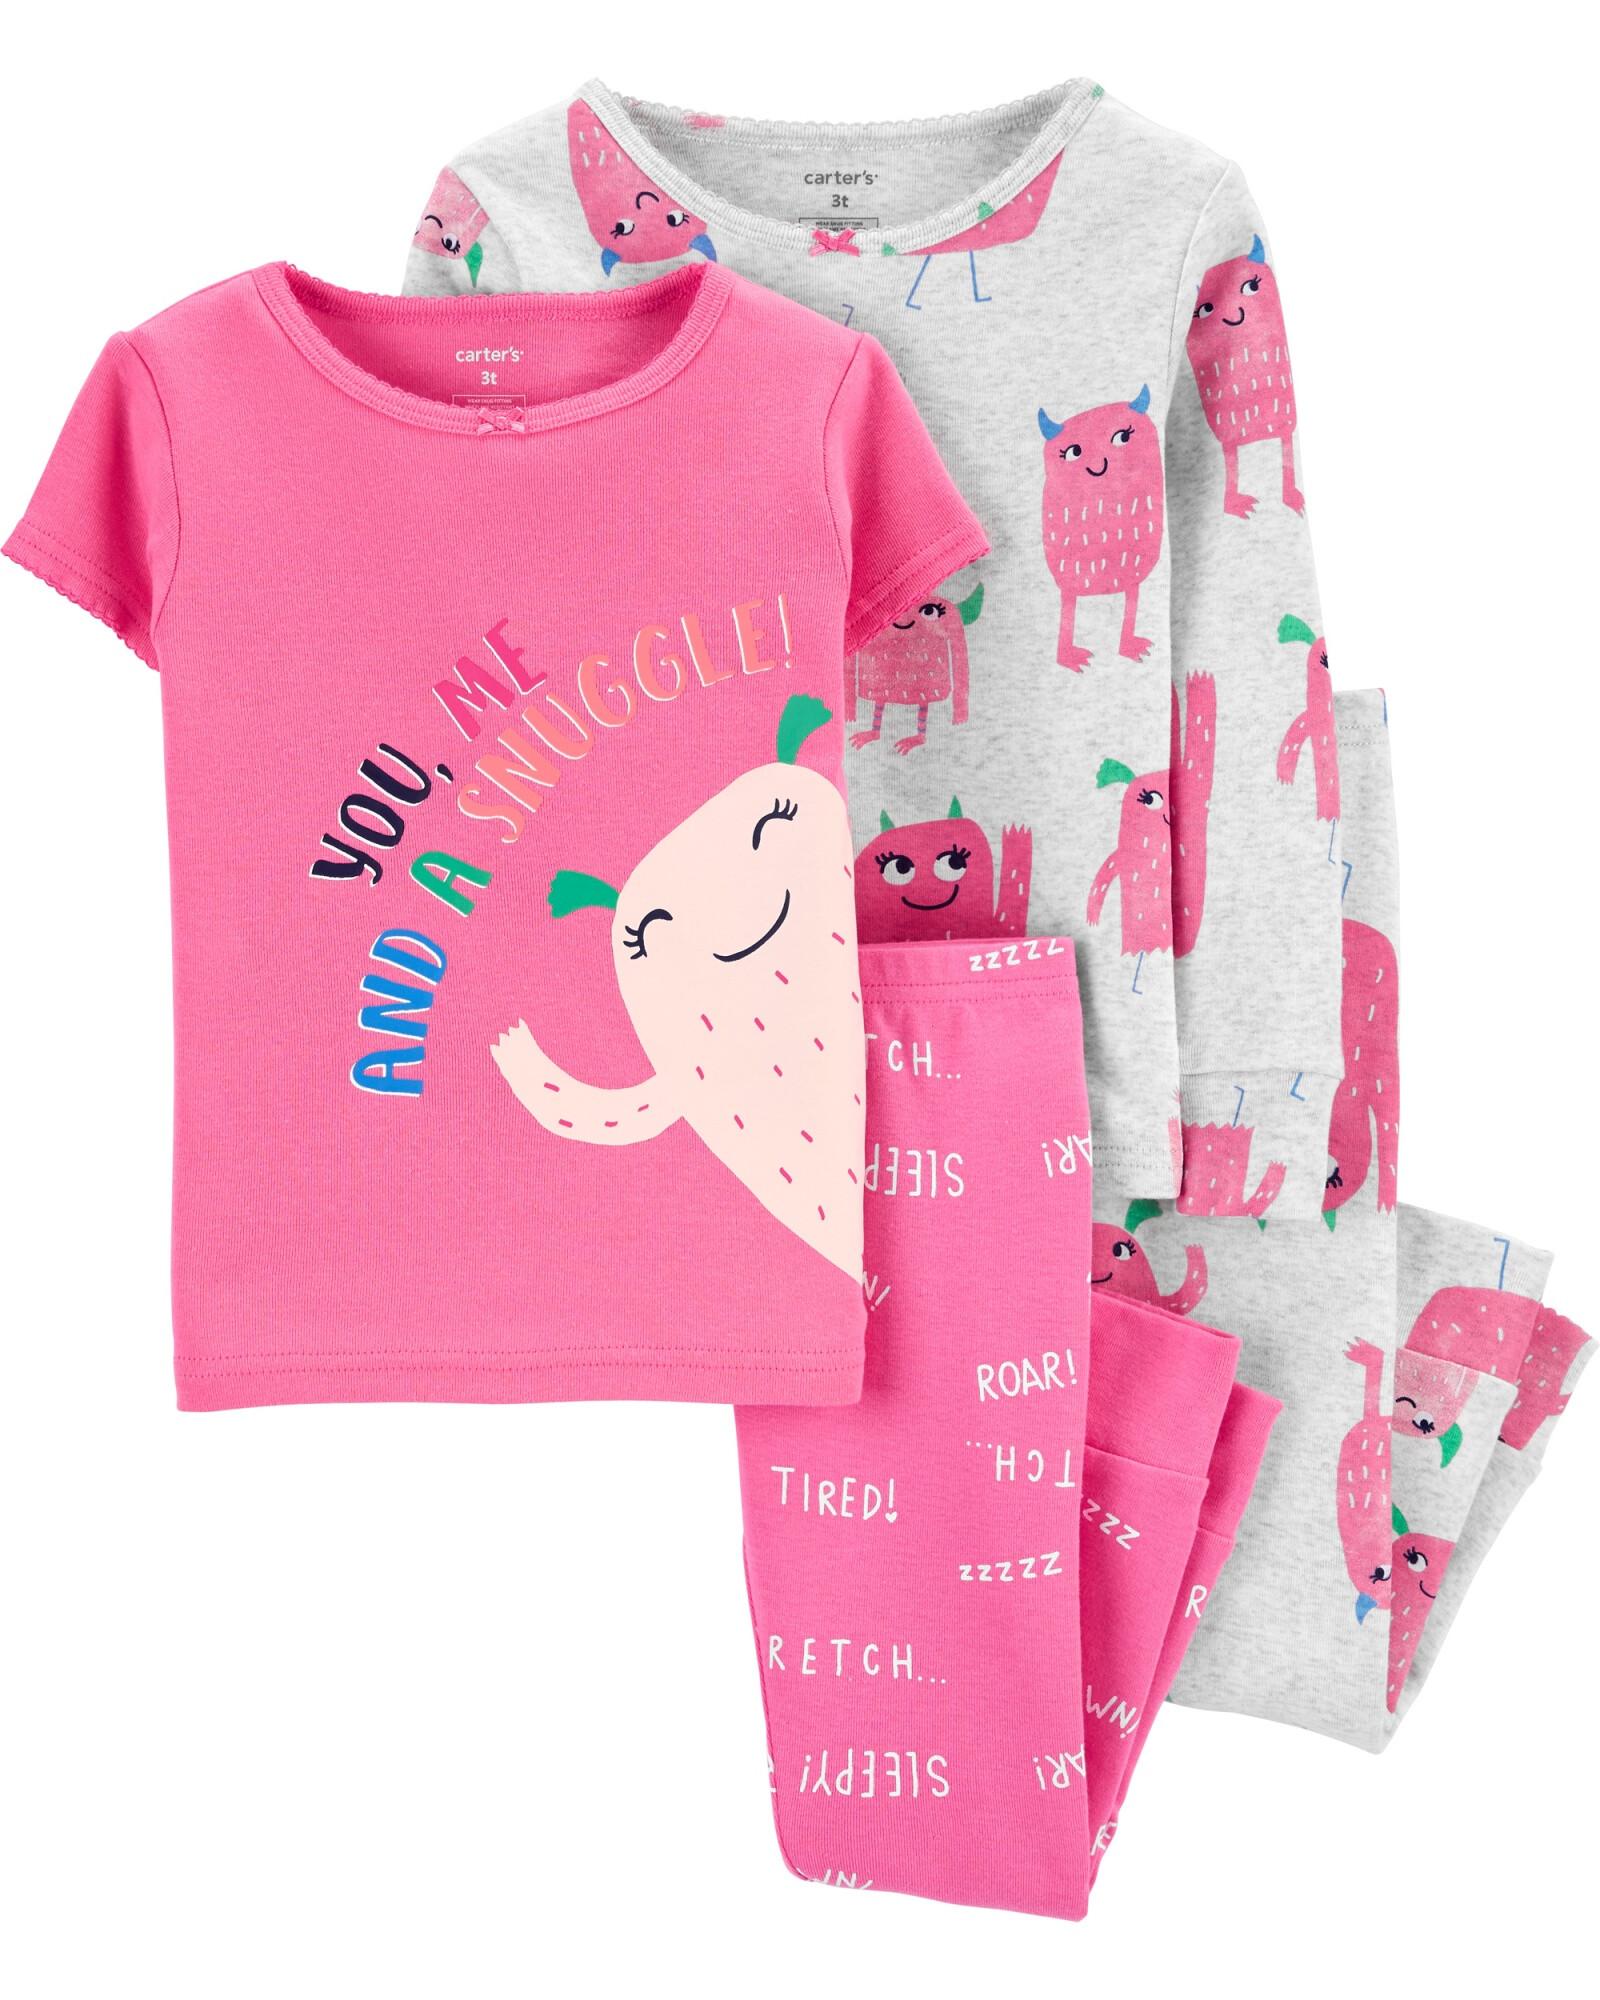 Pijama cuatro piezas de algodón, dos remeras y dos pantalones 0